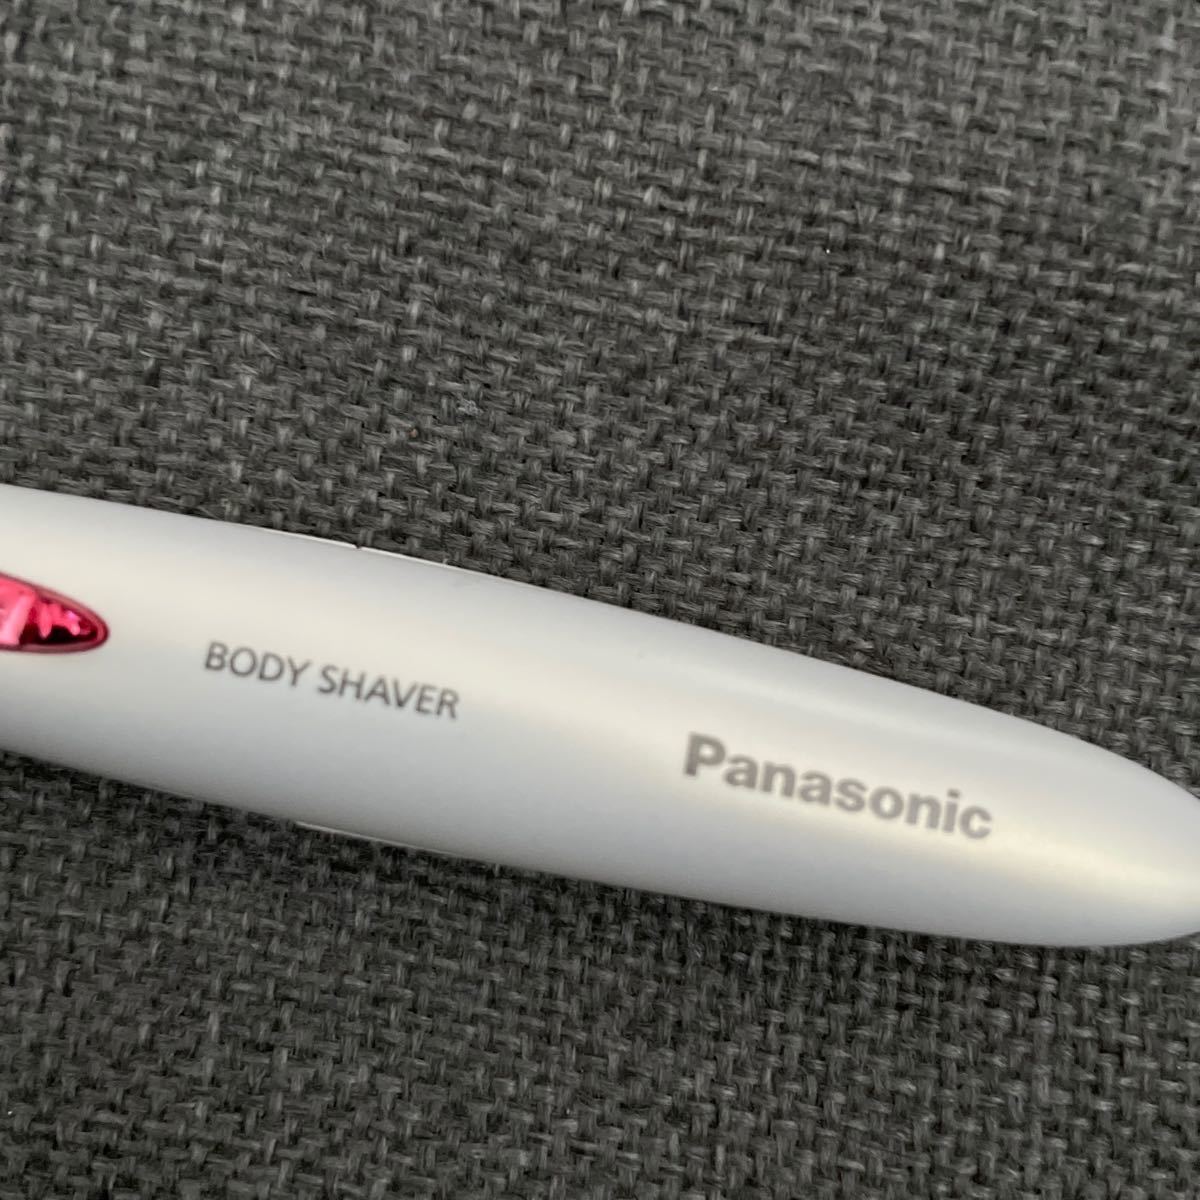 Panasonicボディシェーバー　刃は付いてない状態です、替刃は付けません。その状態でも構わない方のみご購入お願いします。